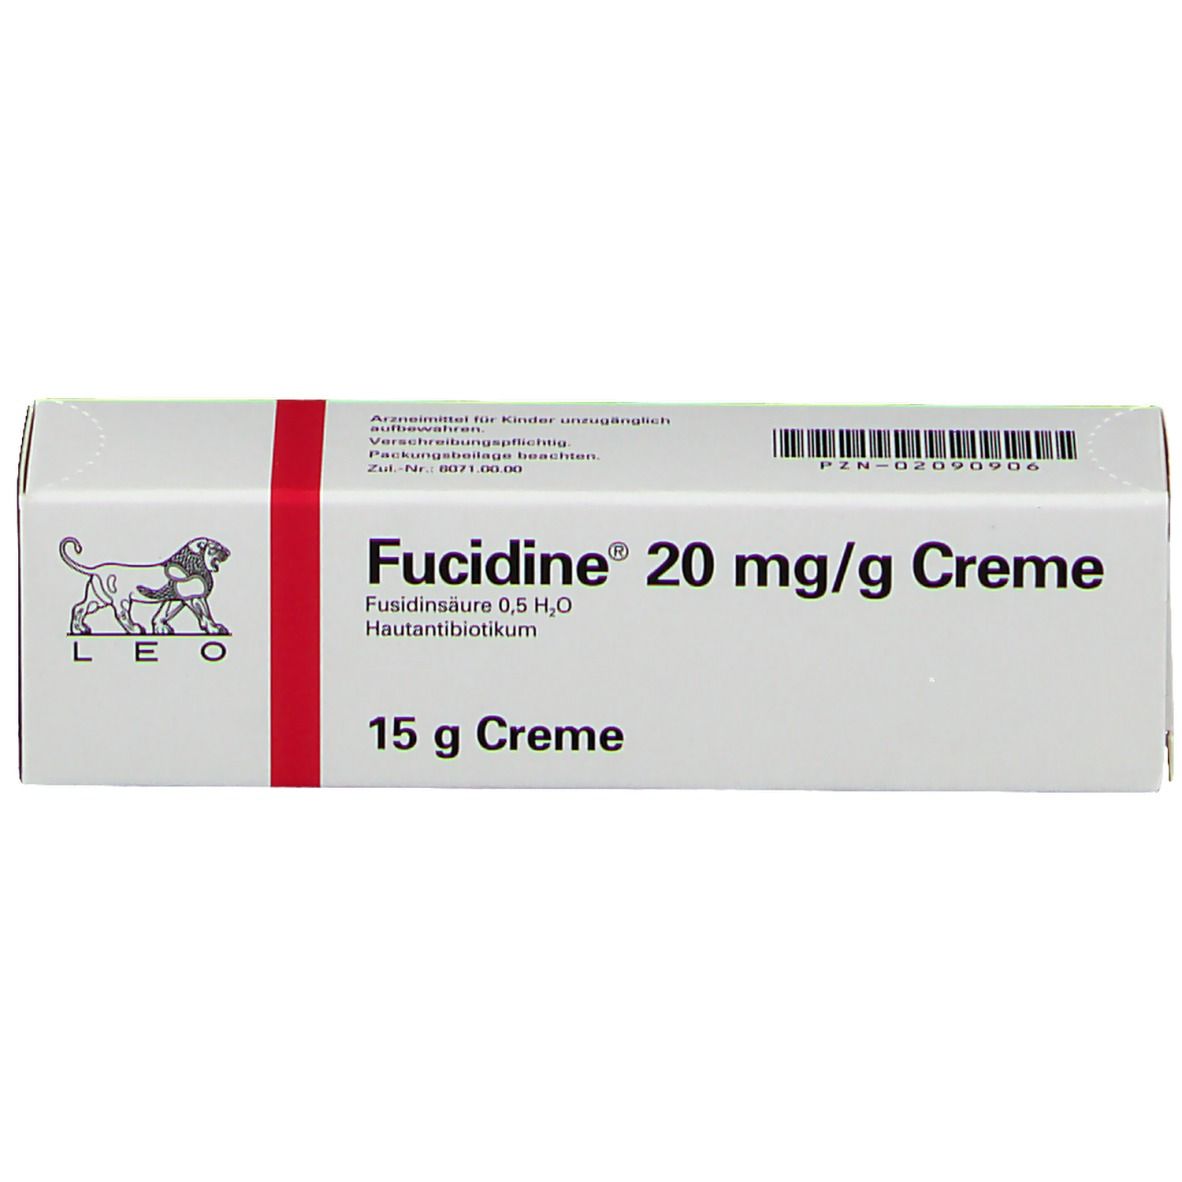 Fucidine® Creme